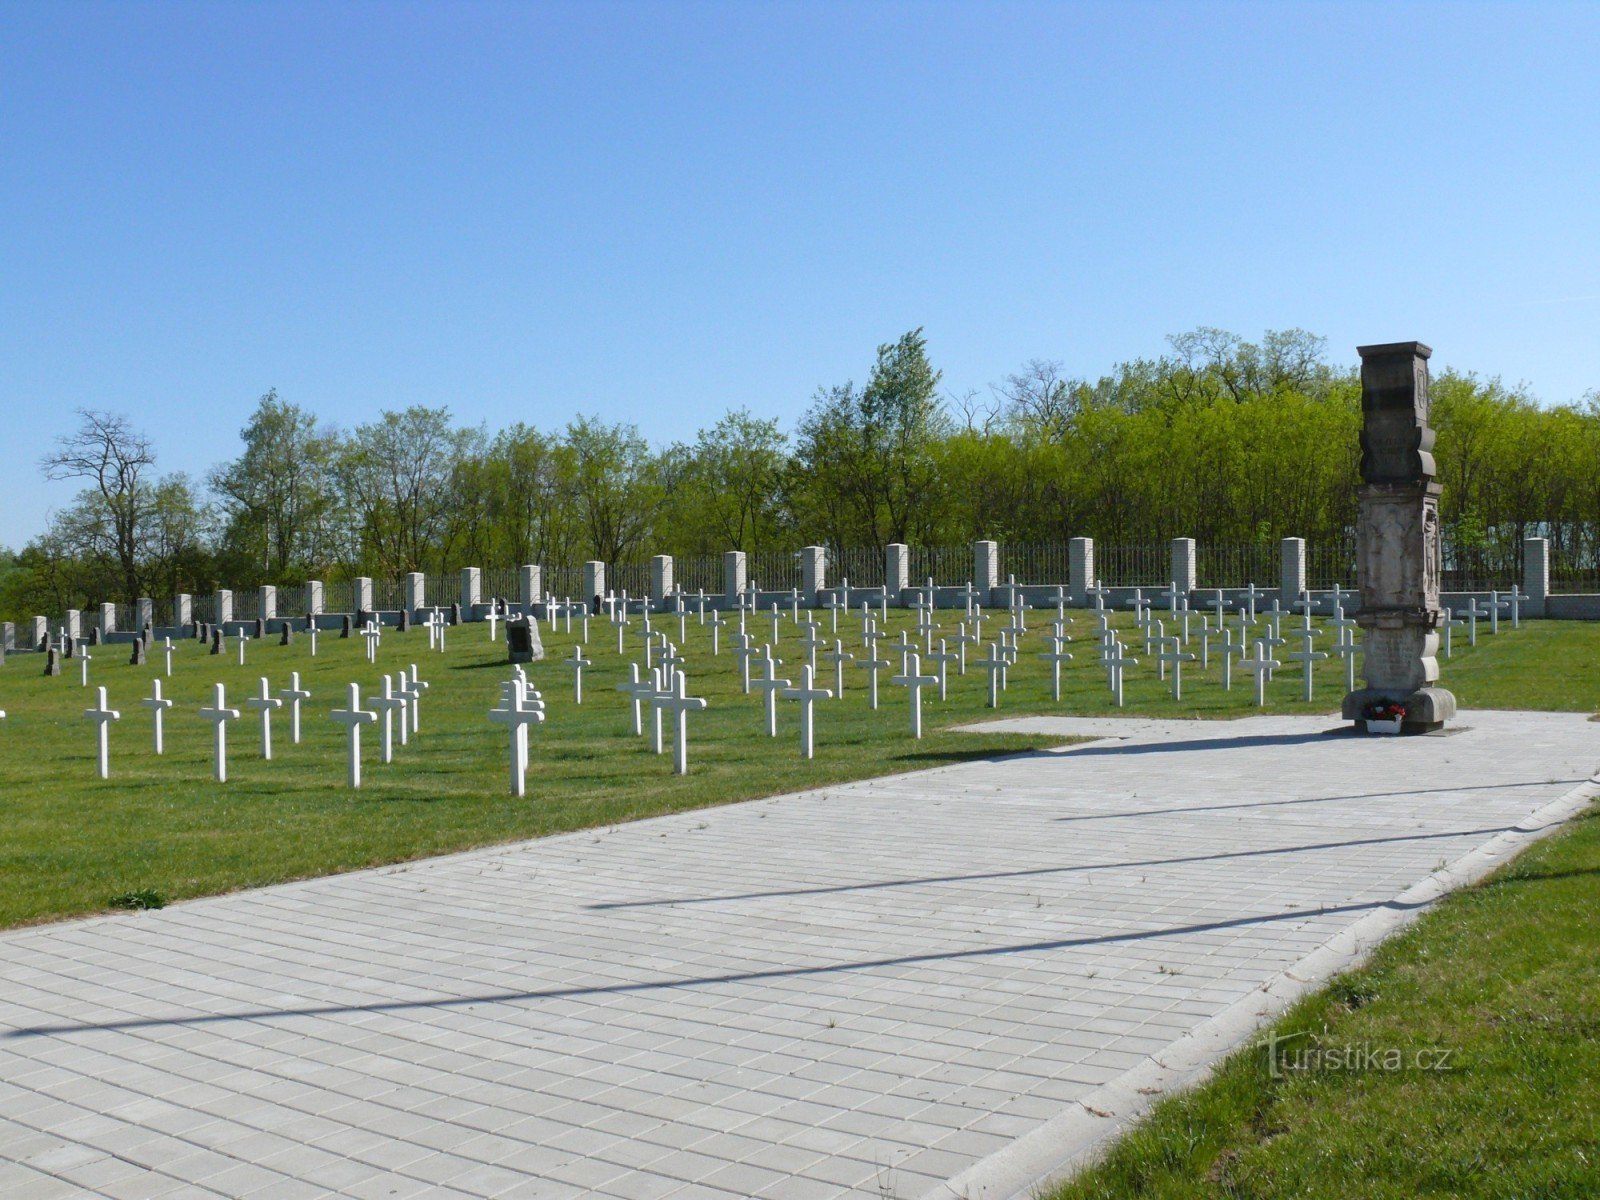 Milovice - Internationell militärkyrkogård